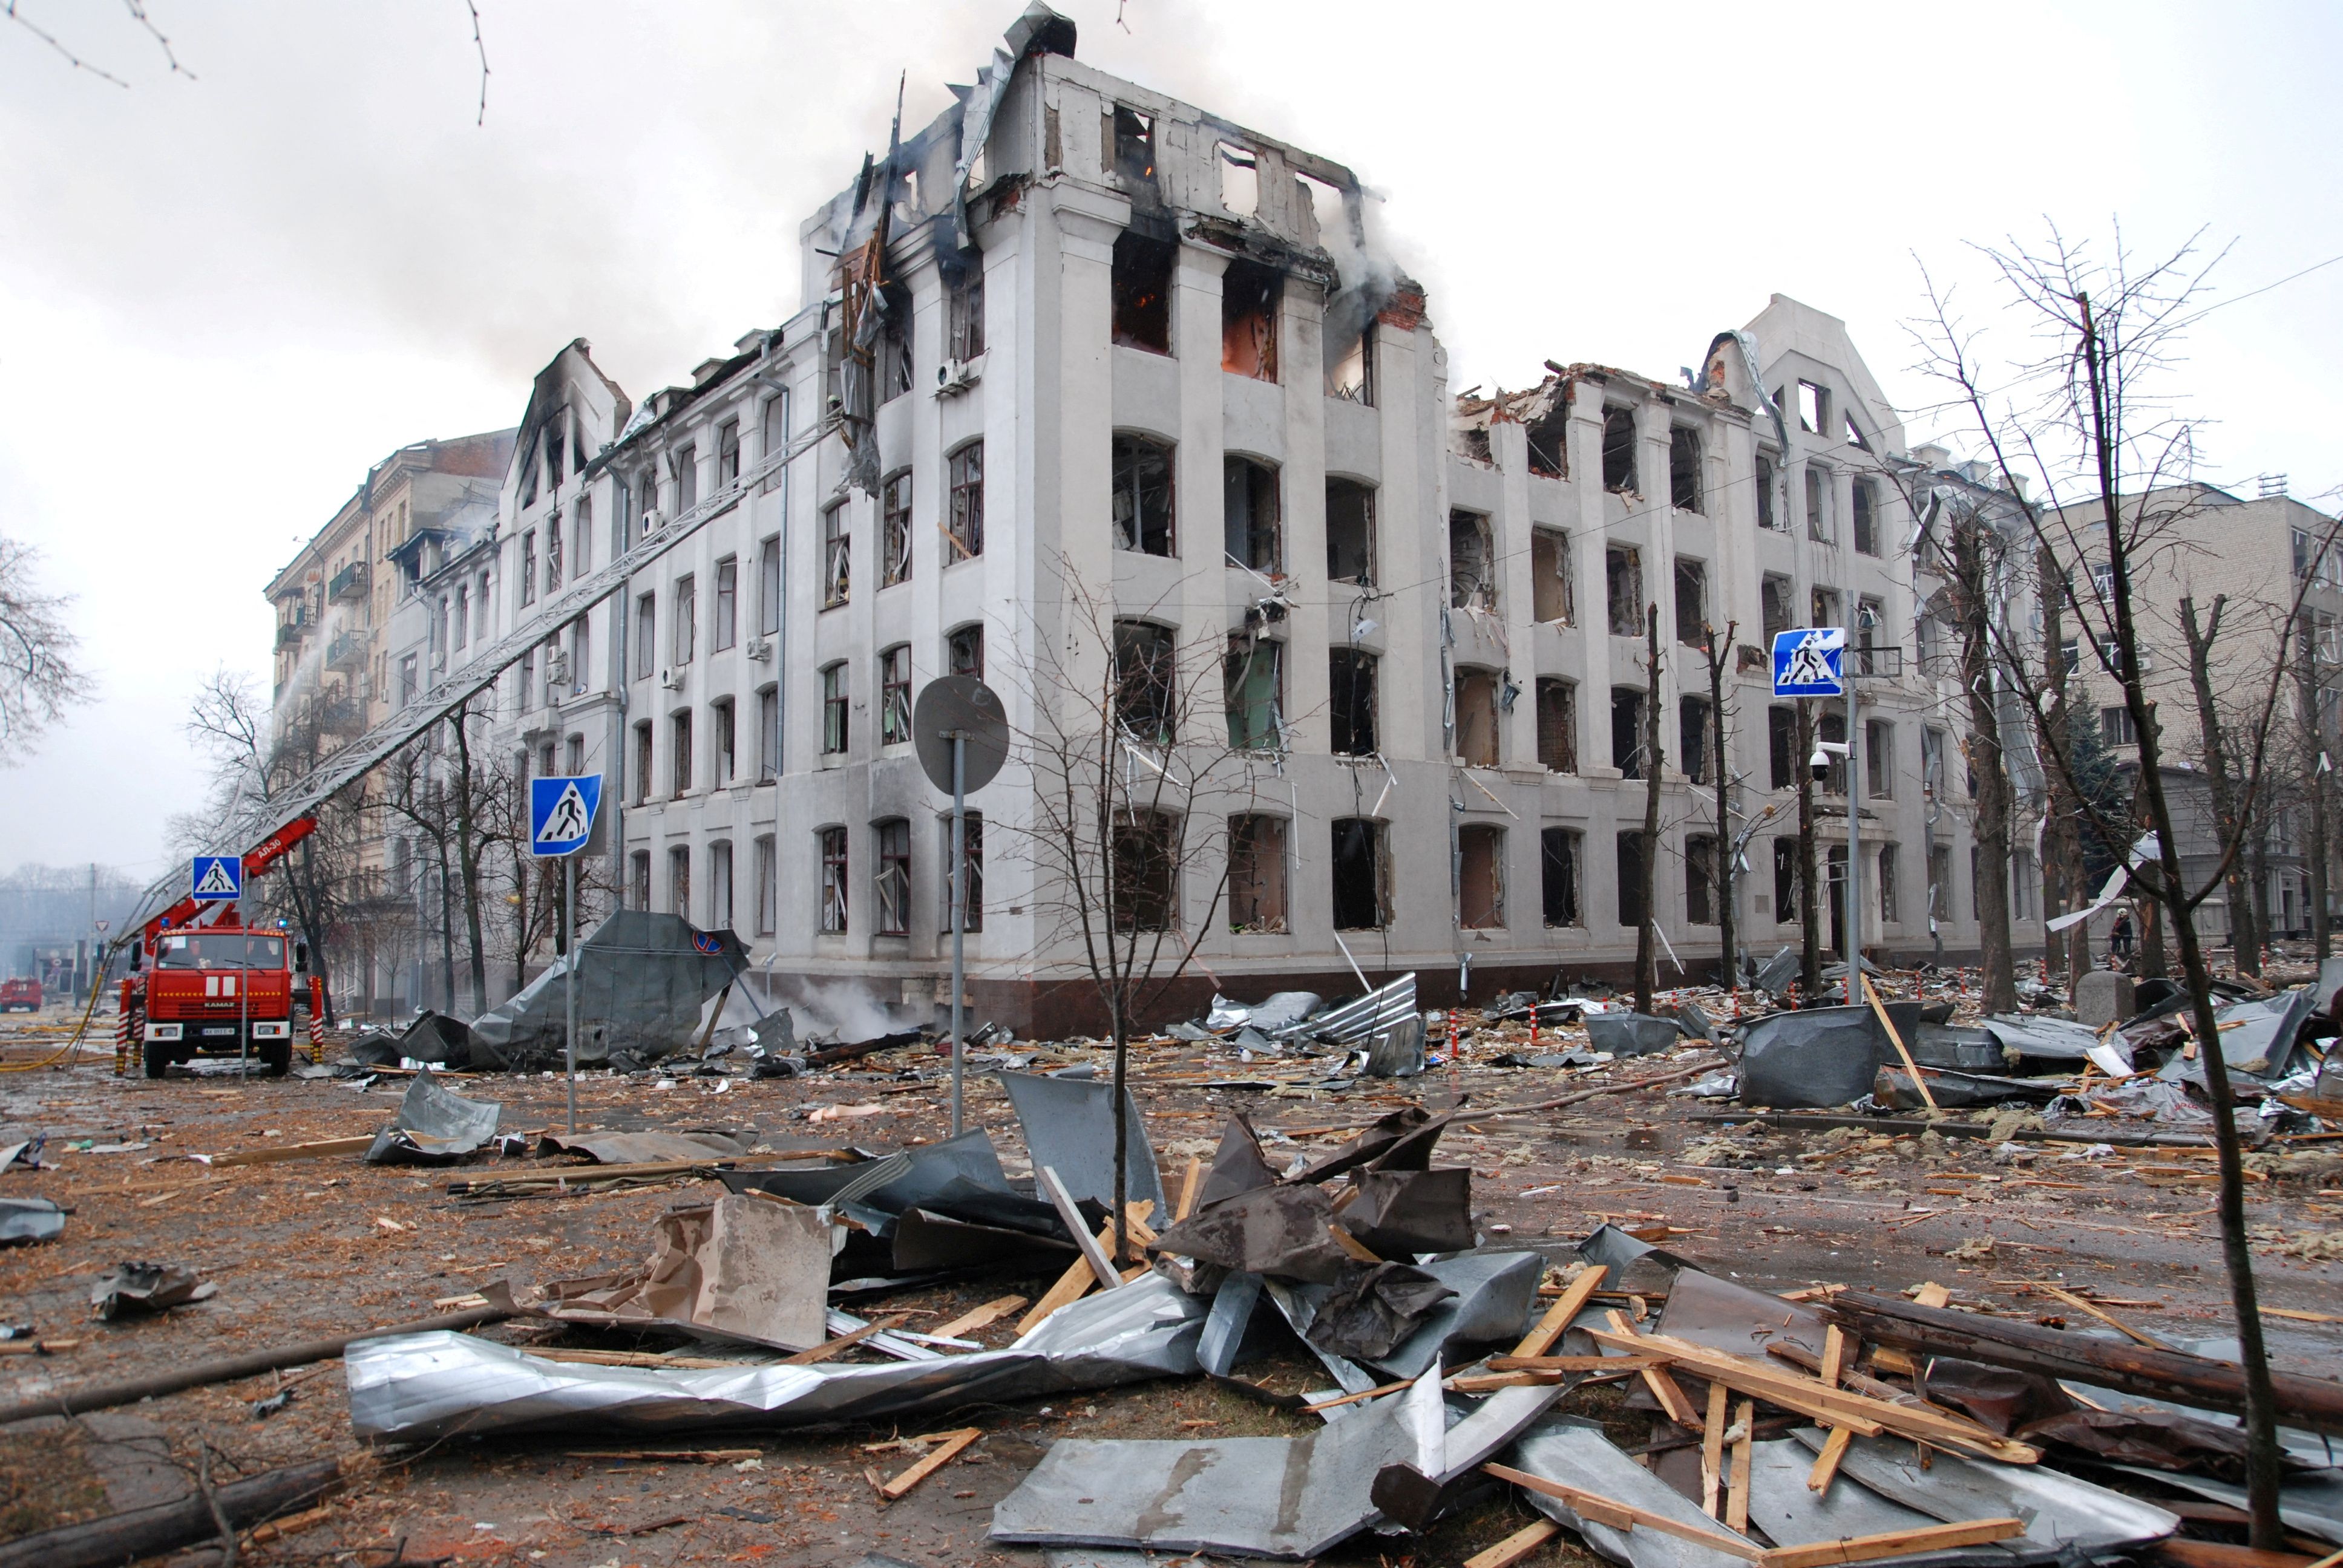 Jarkov, la segunda ciudad más grande de Ucrania, ha sido fuertemente atacada